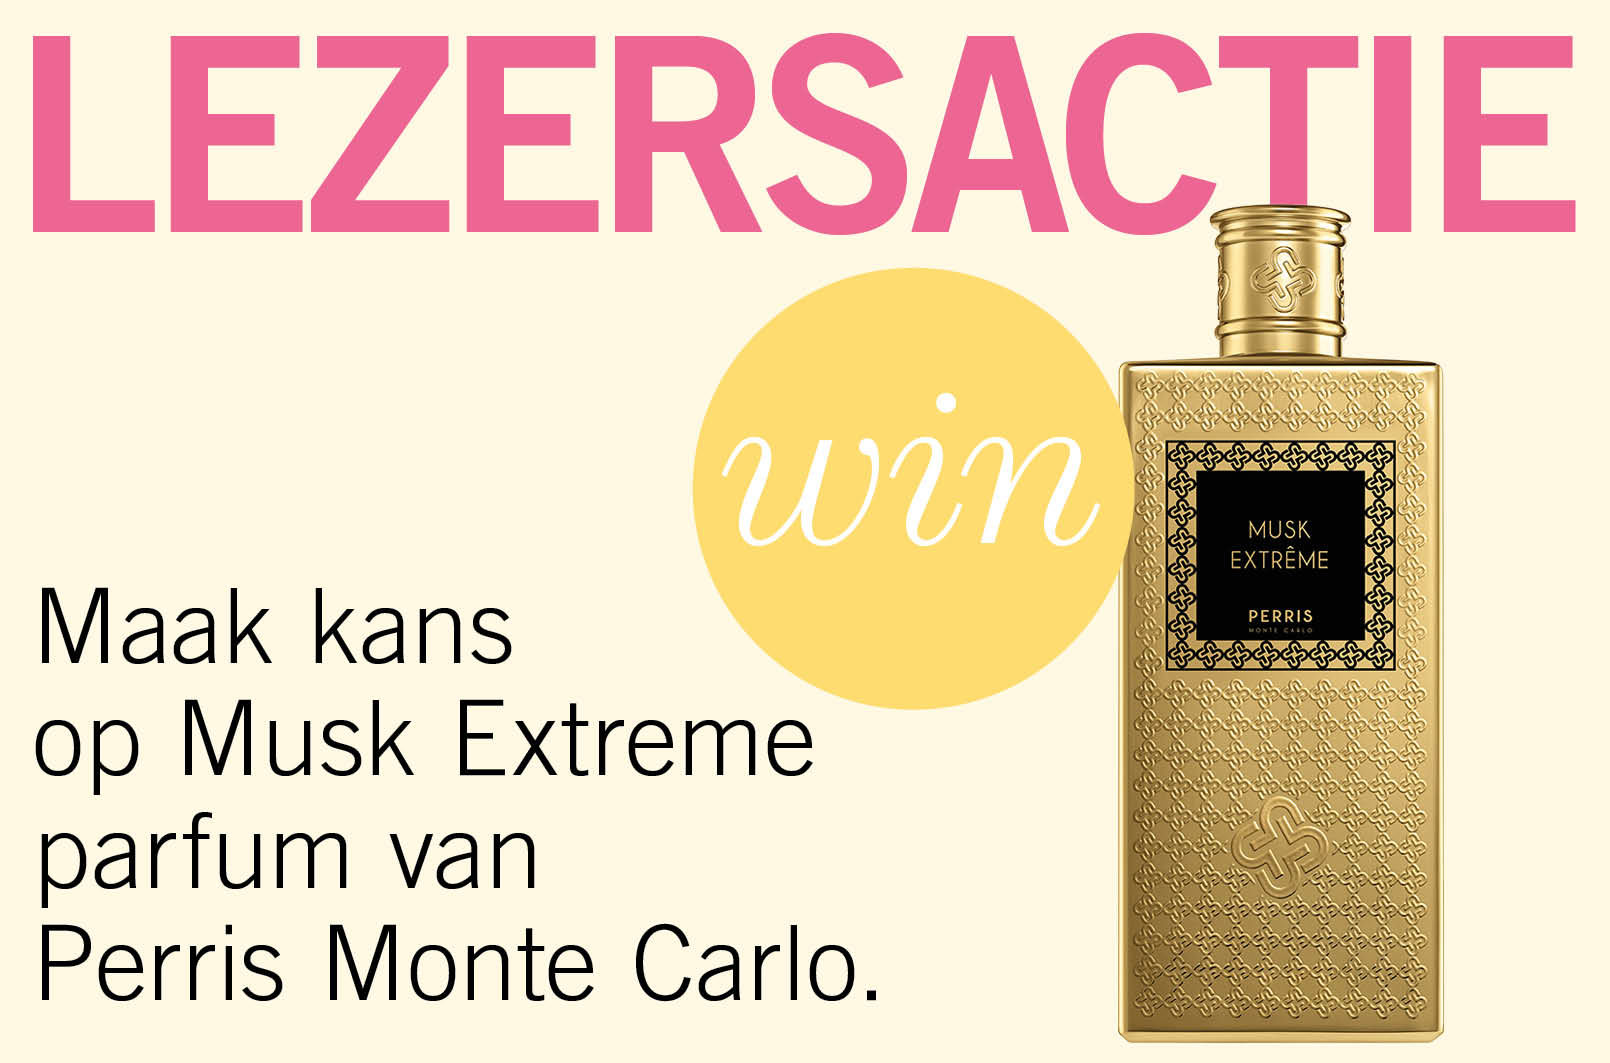 Maak kans op Musk Extreme parfum van Perris Monte Carlo